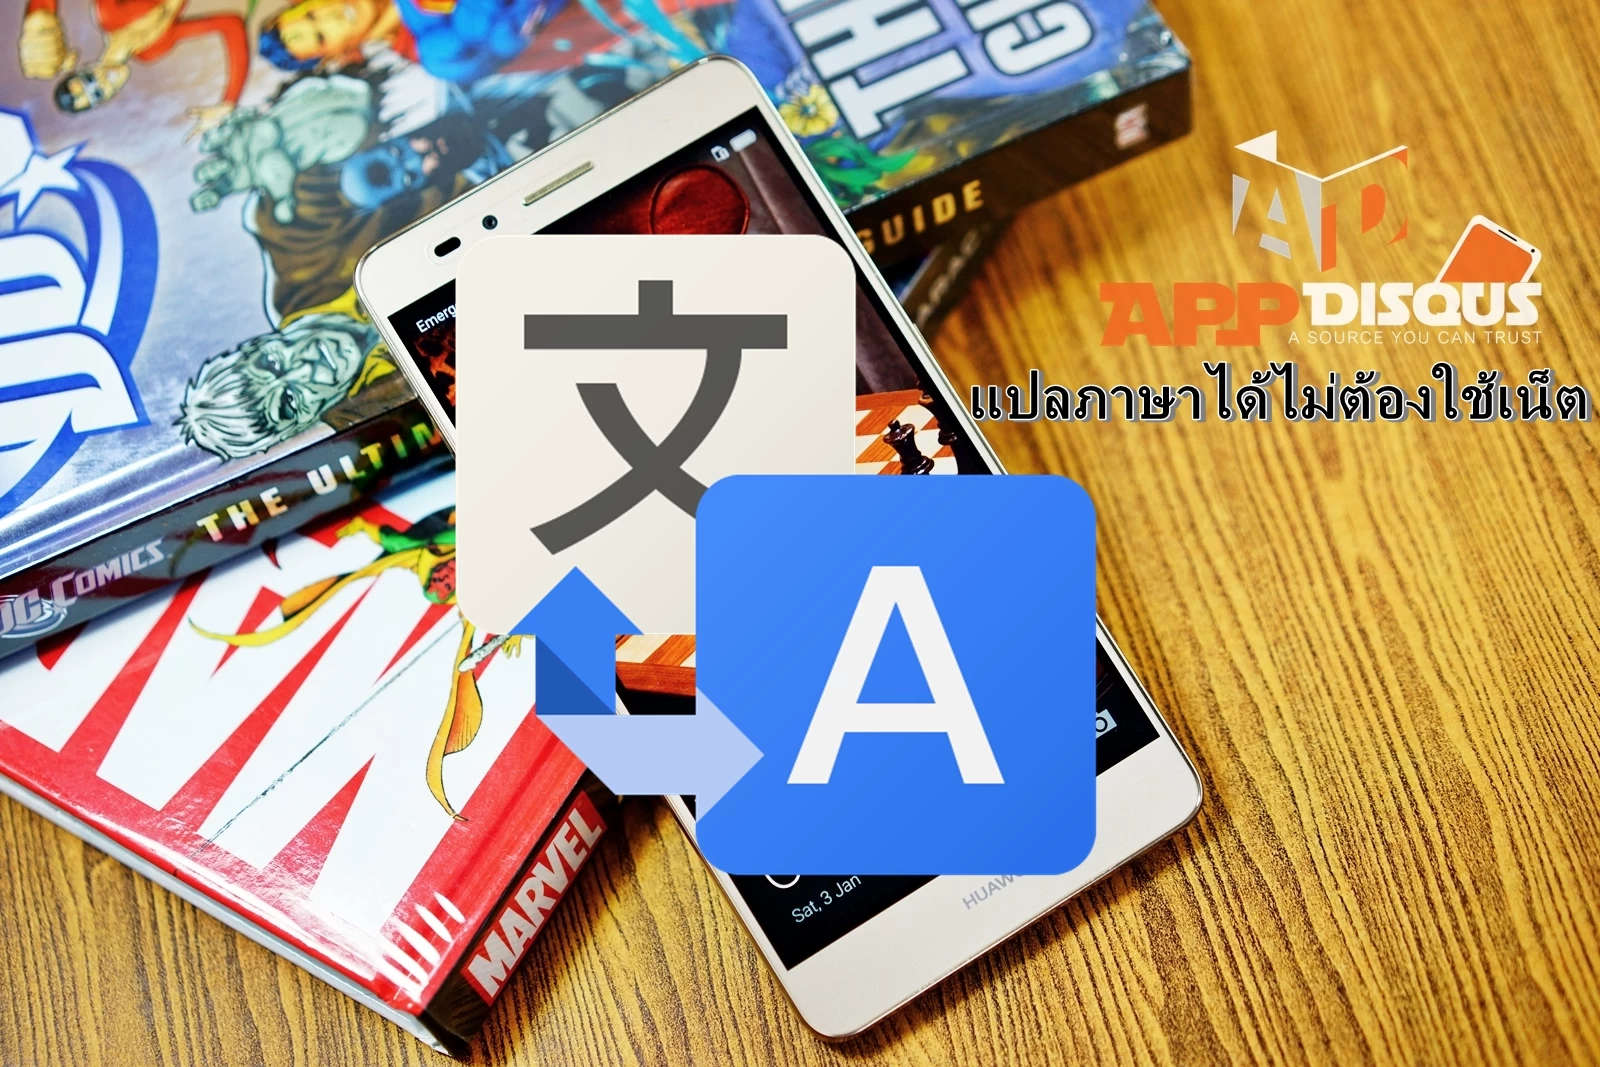 google translate offline | Android | Tip: วิธีตั้งค่าให้แอพแปลภาษา Google Translate แปลภาษาได้ทุกที่ทุกเวลาโดยไม่ต้องใช้เน็ต ทำได้บนเครื่องระบบ Android เท่านั้น!